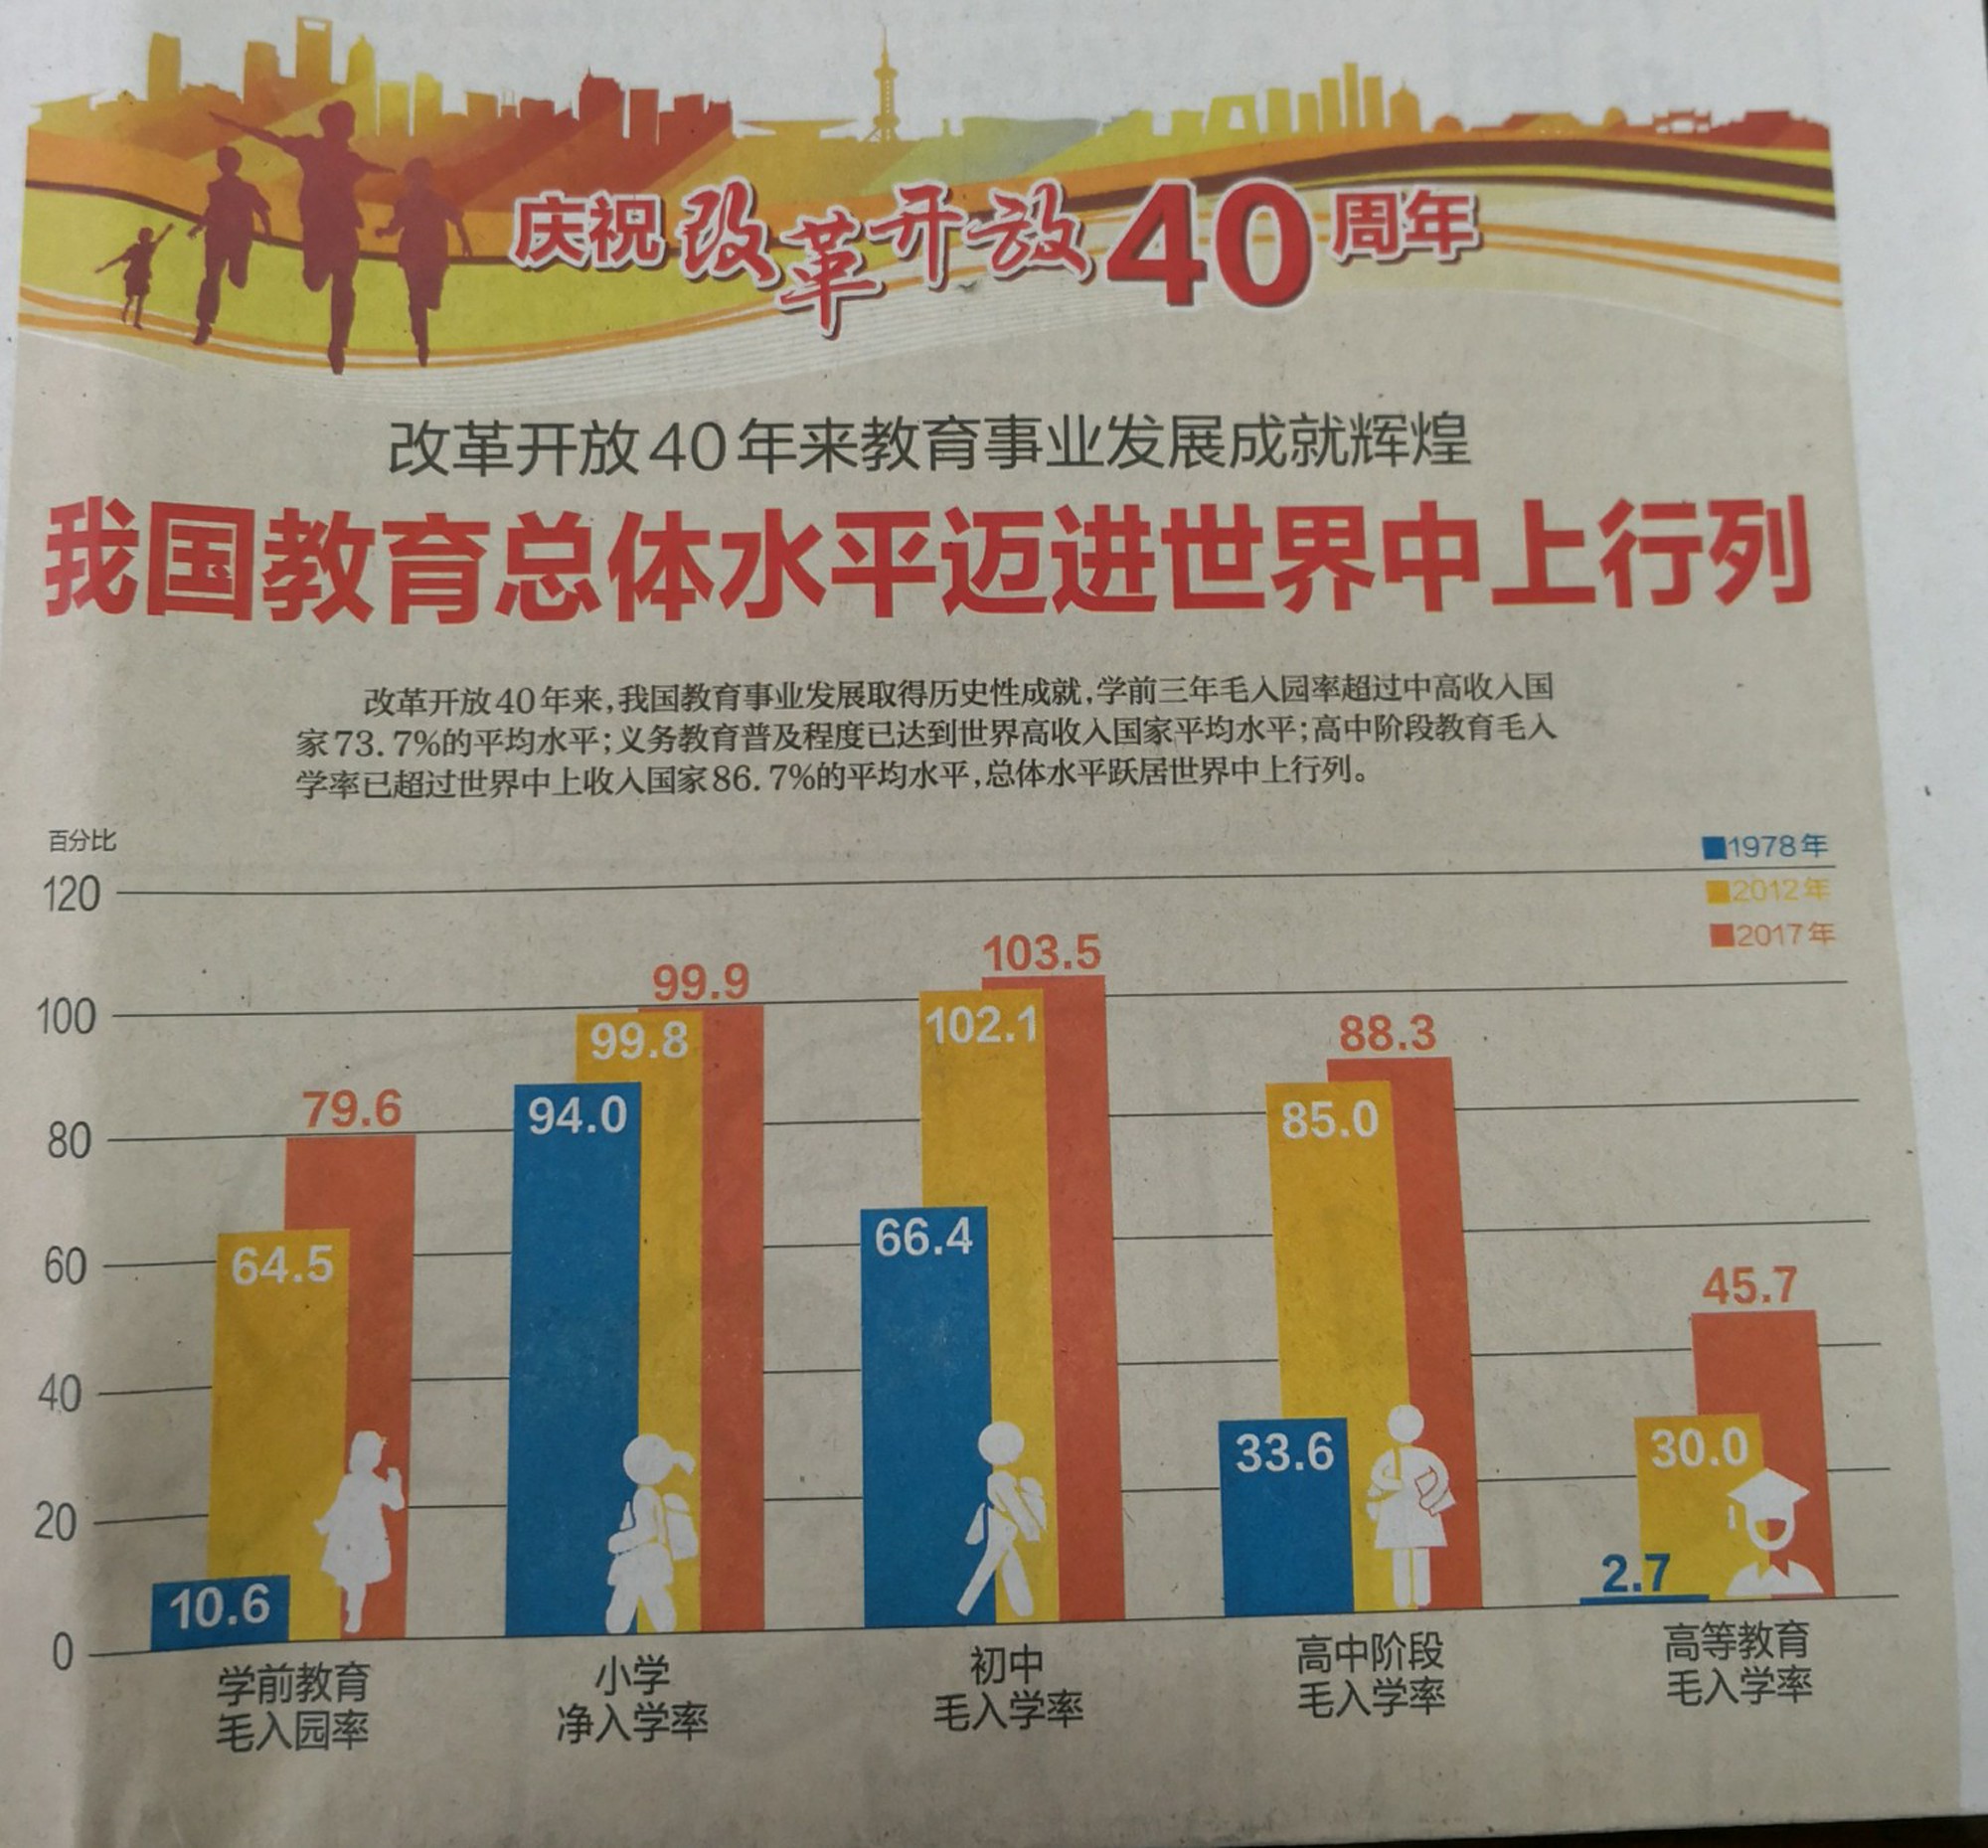 中国教育改革40年取得哪些成绩16张图让你看懂